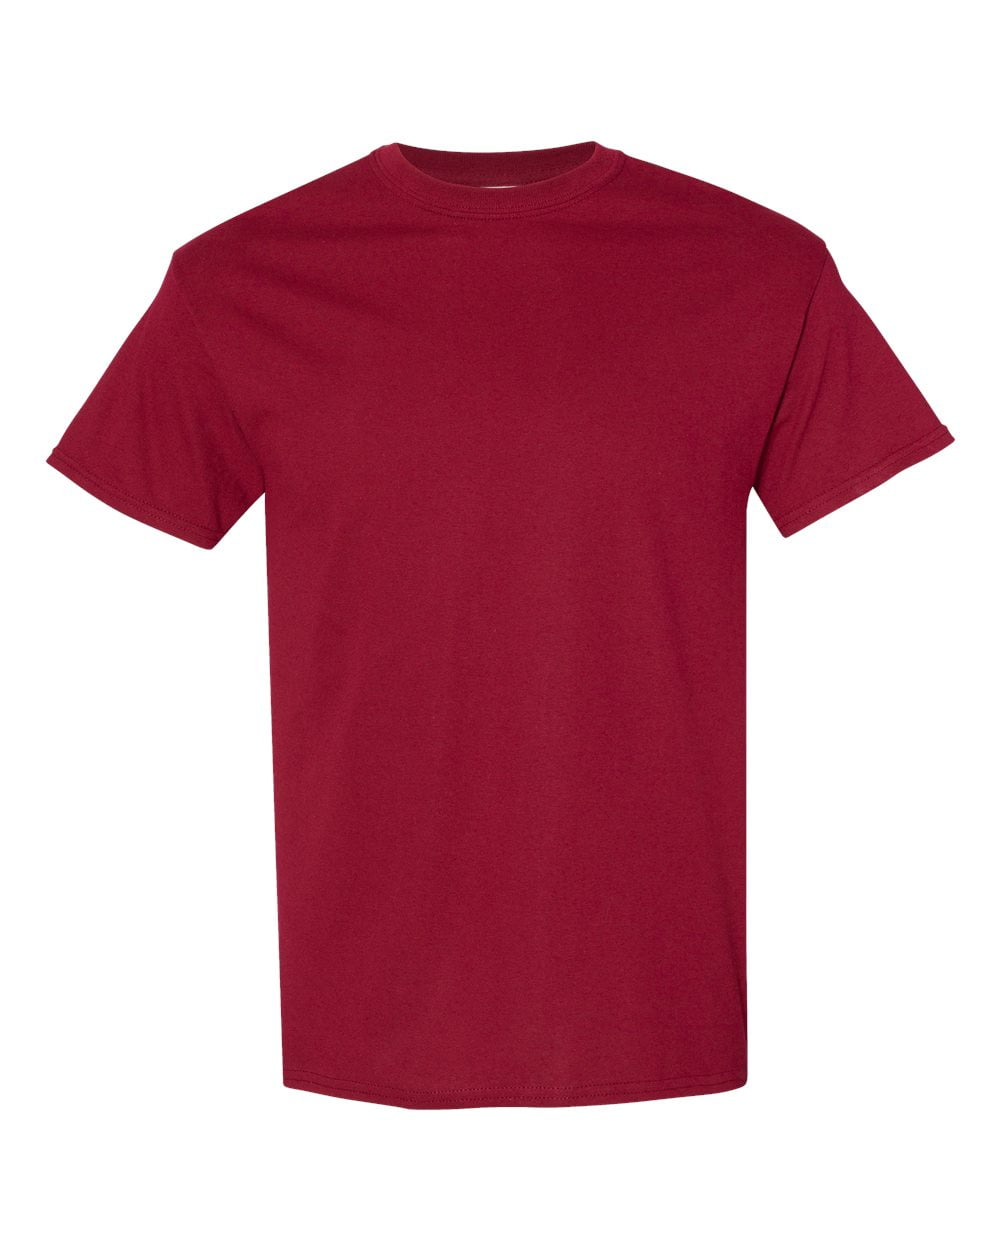 Men Heavy Cotton Multi Colors T-Shirt Color Garnet 4X-Large Size